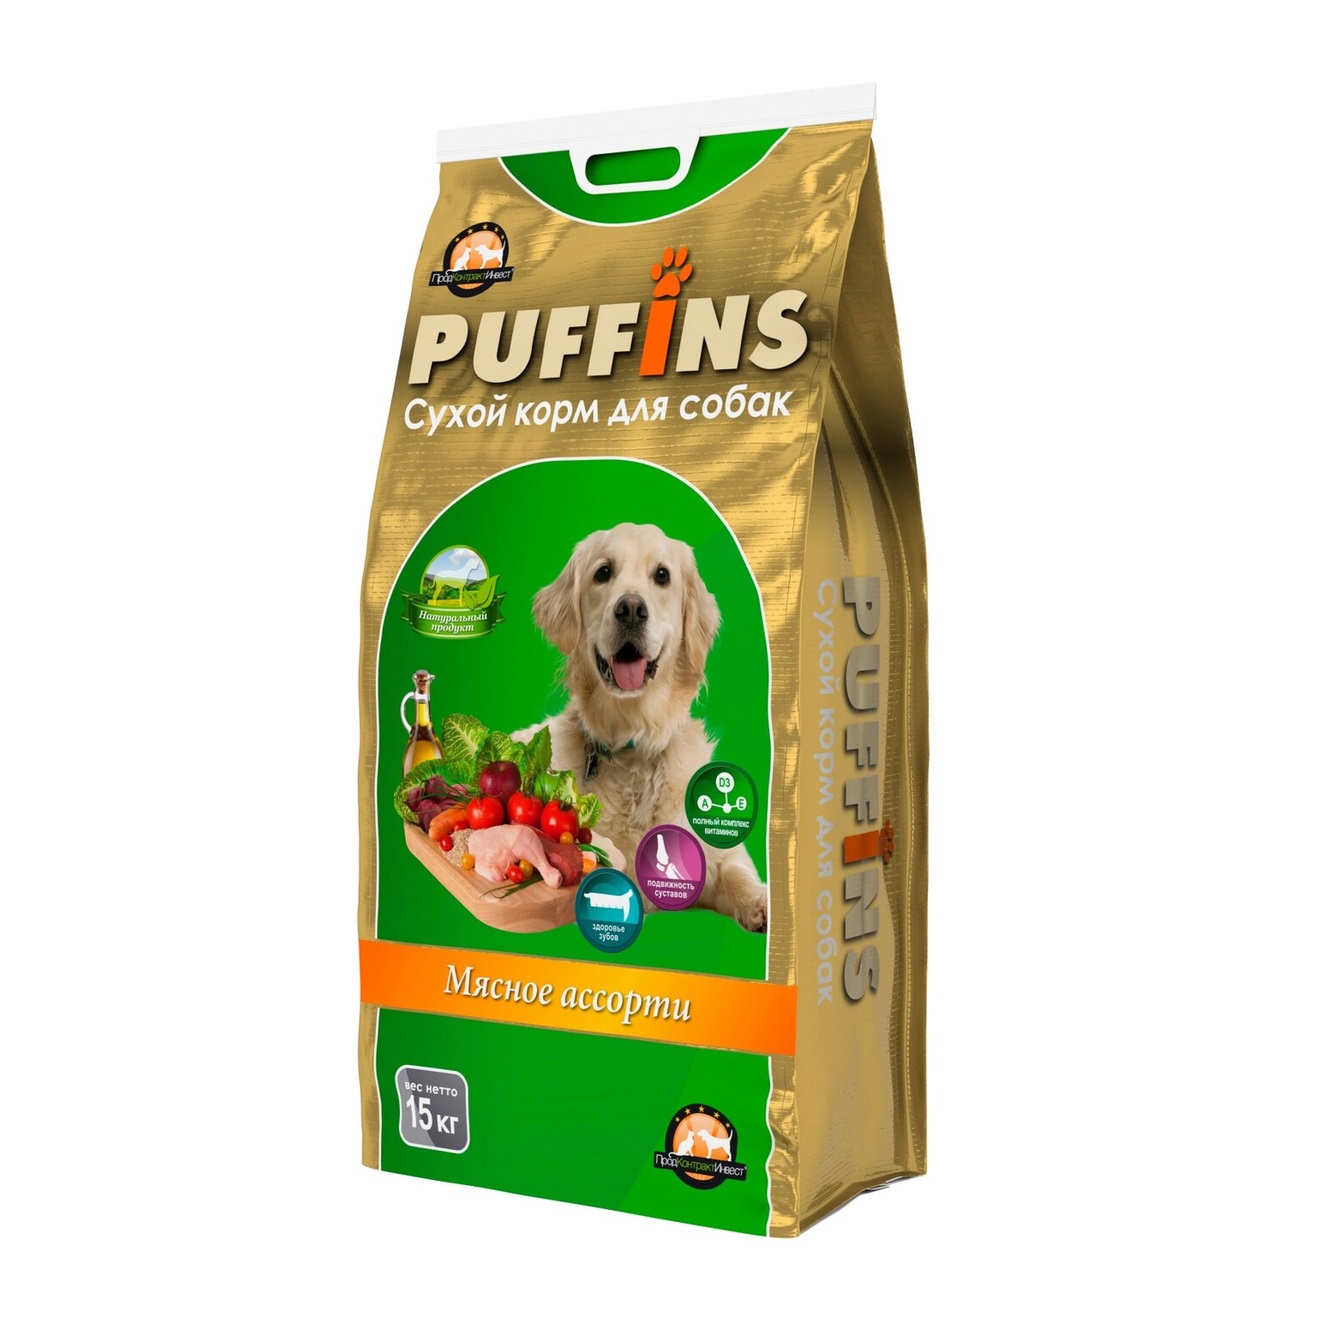 Паффинс 15кг - Мясное ассорти - сухой корм для собак (Puffins)